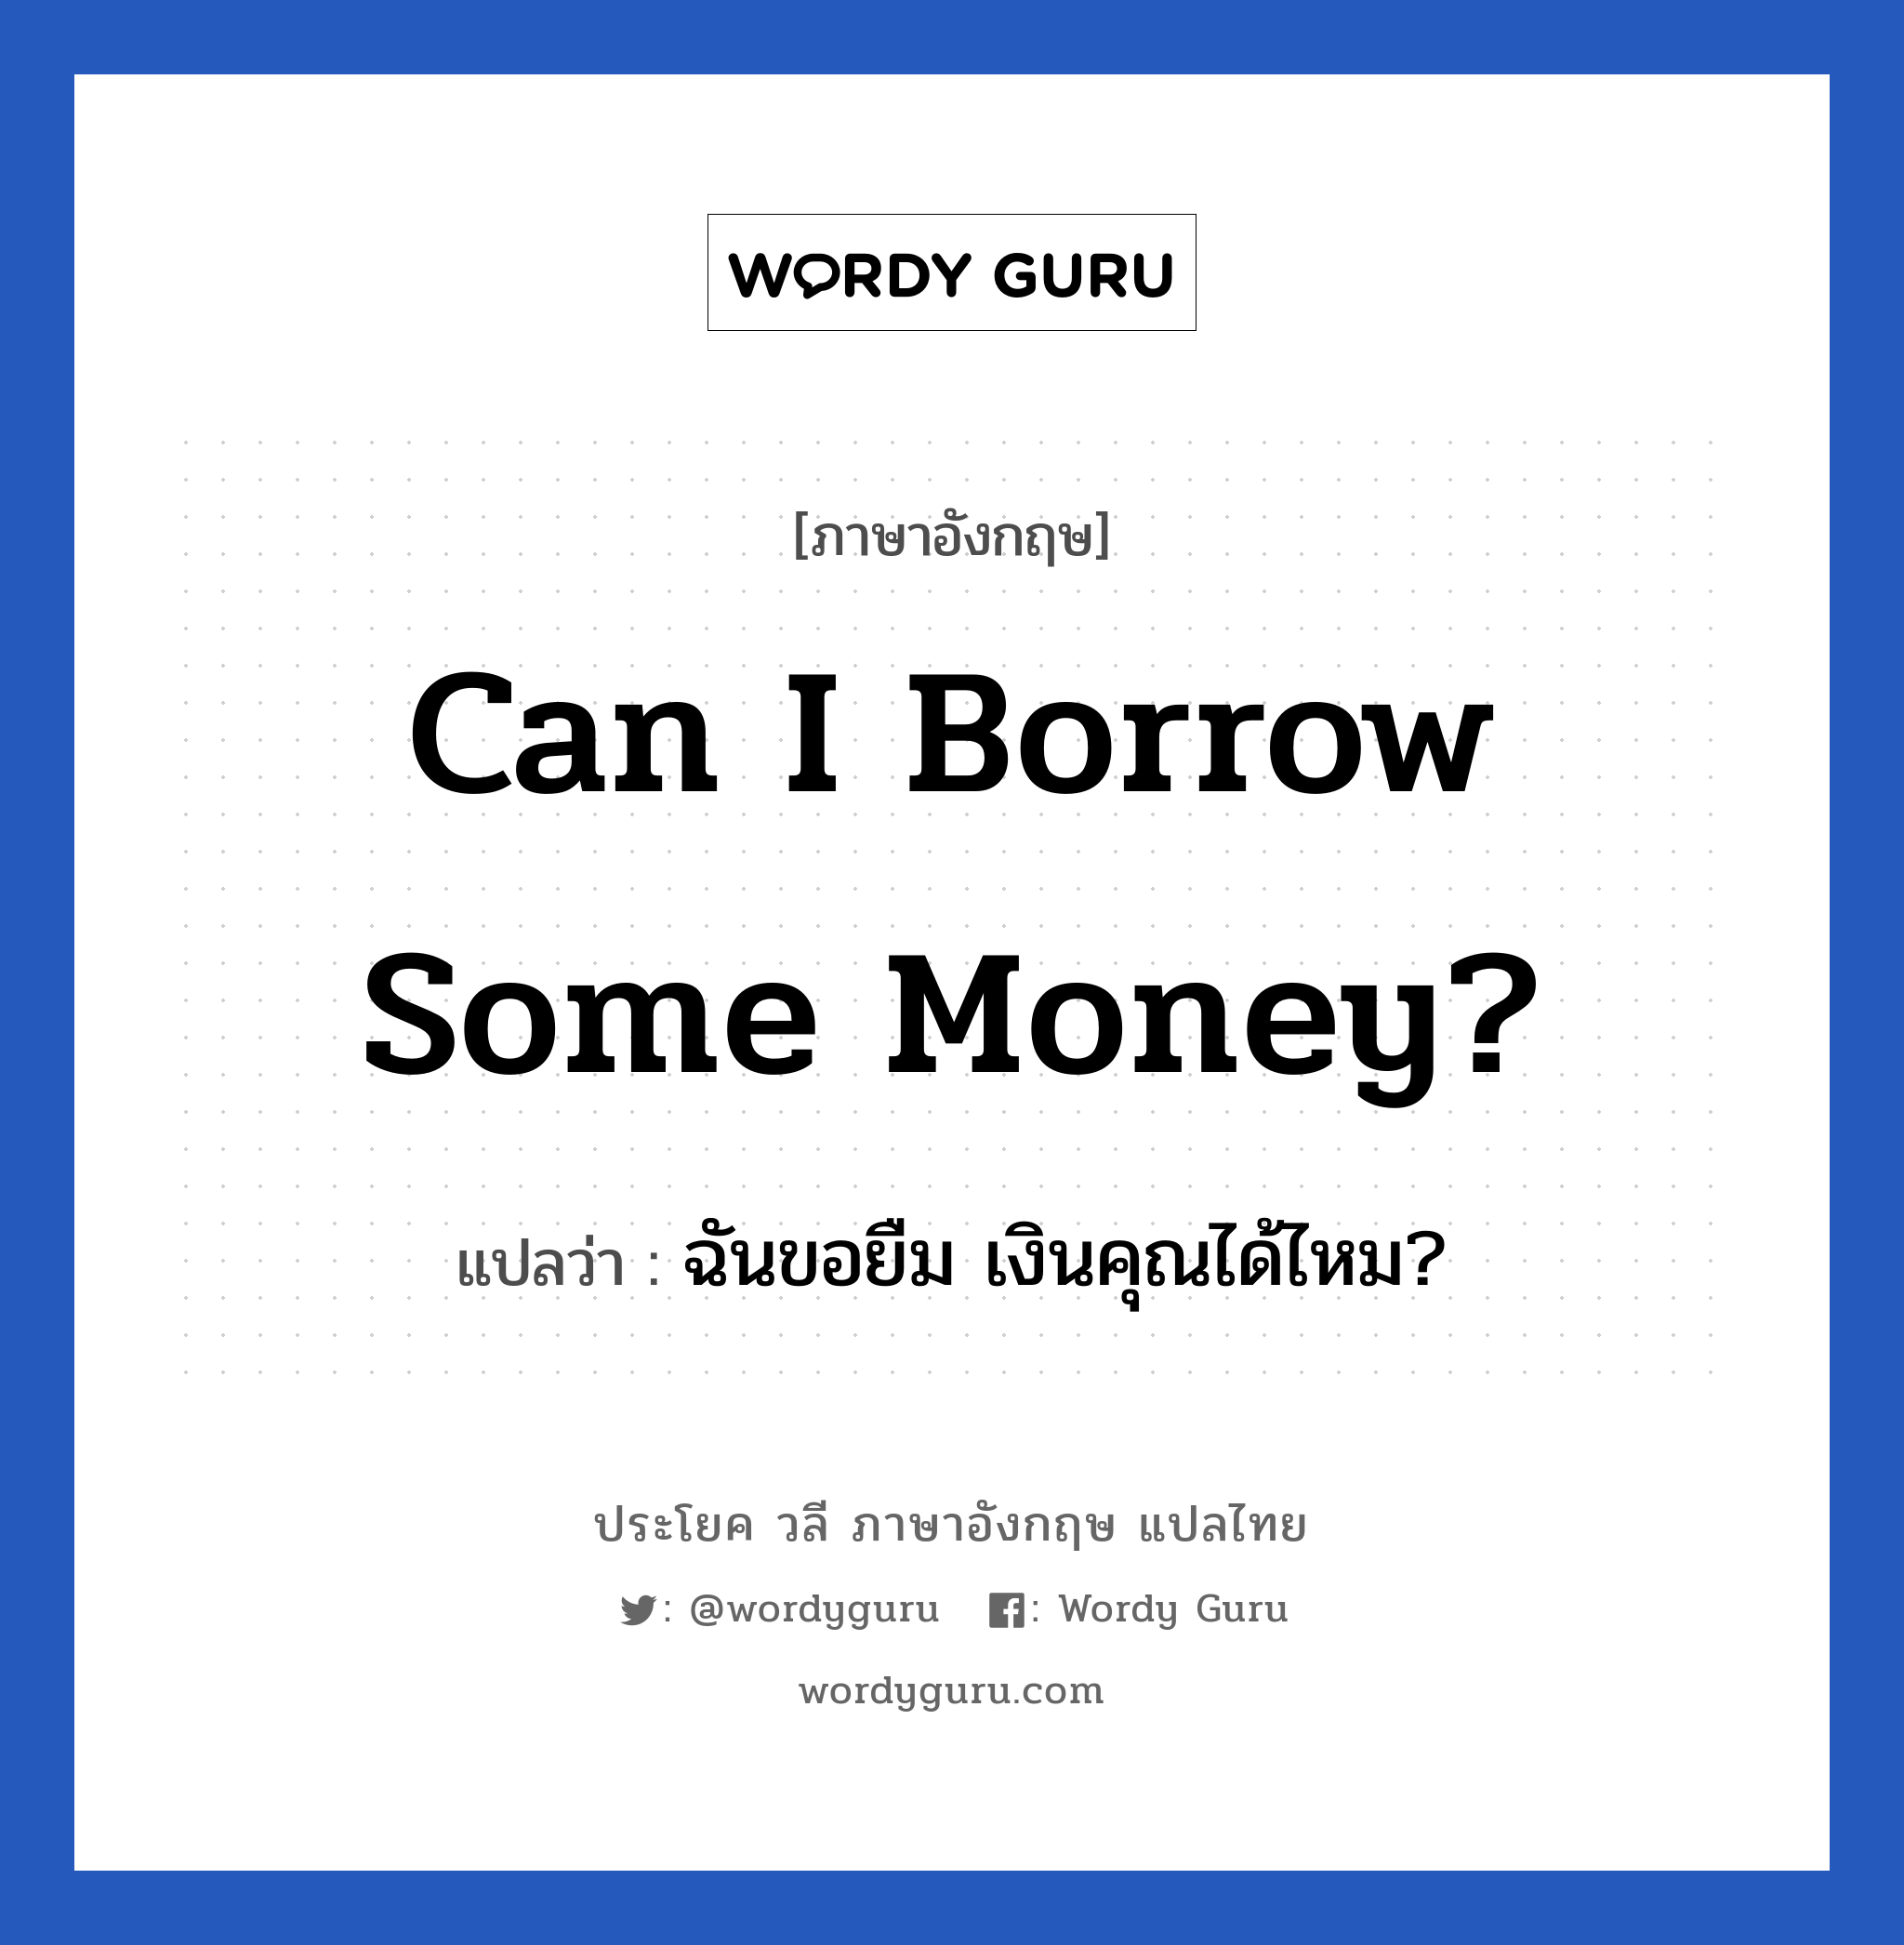 ฉันขอยืม เงินคุณได้ไหม? ภาษาอังกฤษ?, วลีภาษาอังกฤษ ฉันขอยืม เงินคุณได้ไหม? แปลว่า Can I borrow some money?